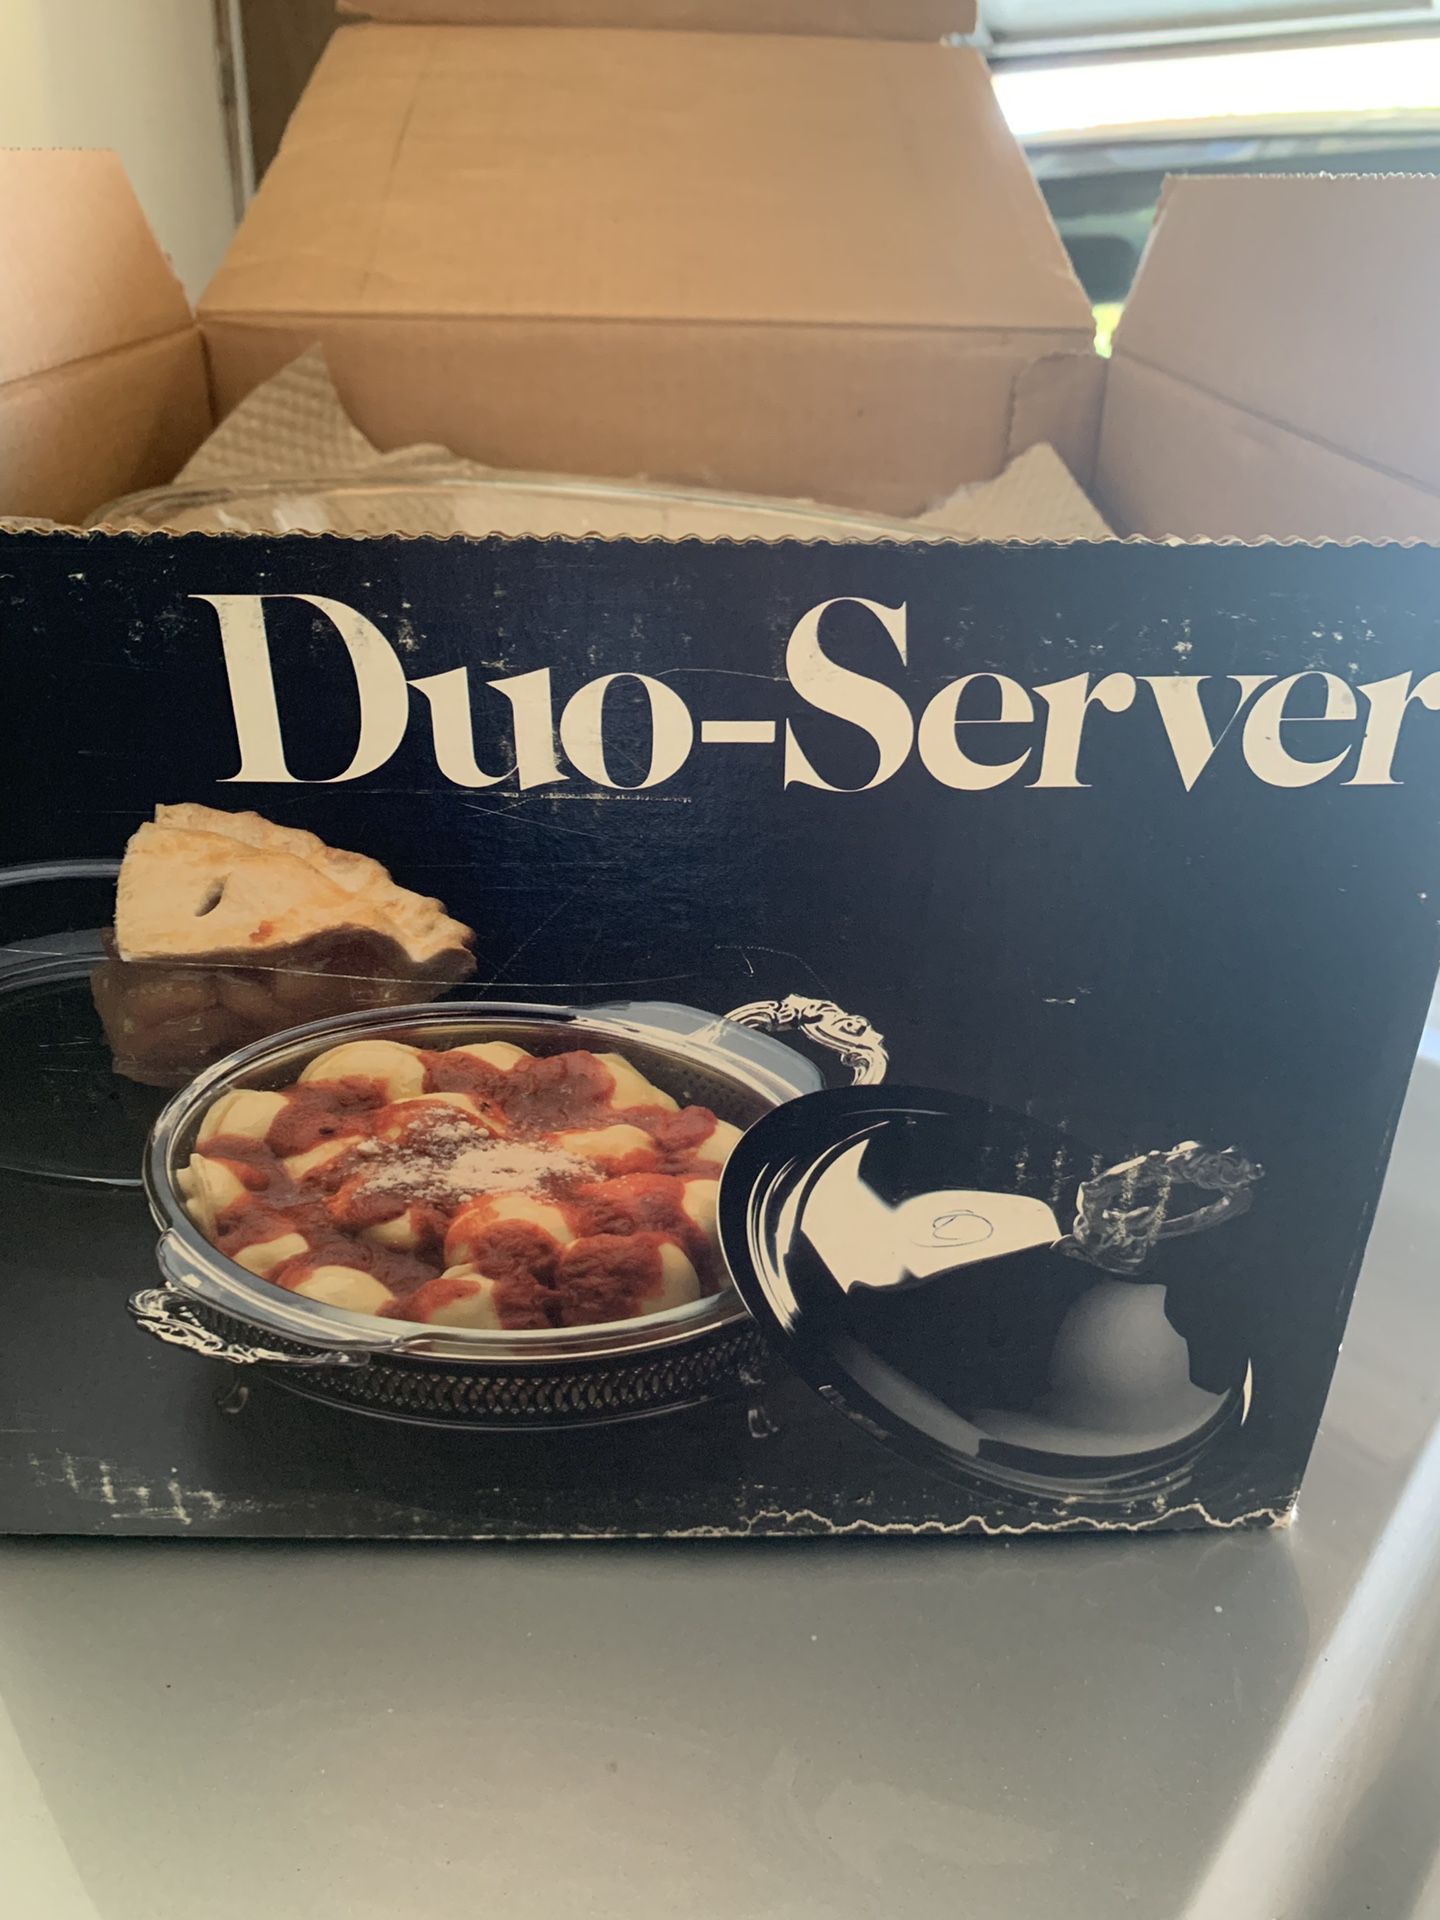 Dual server